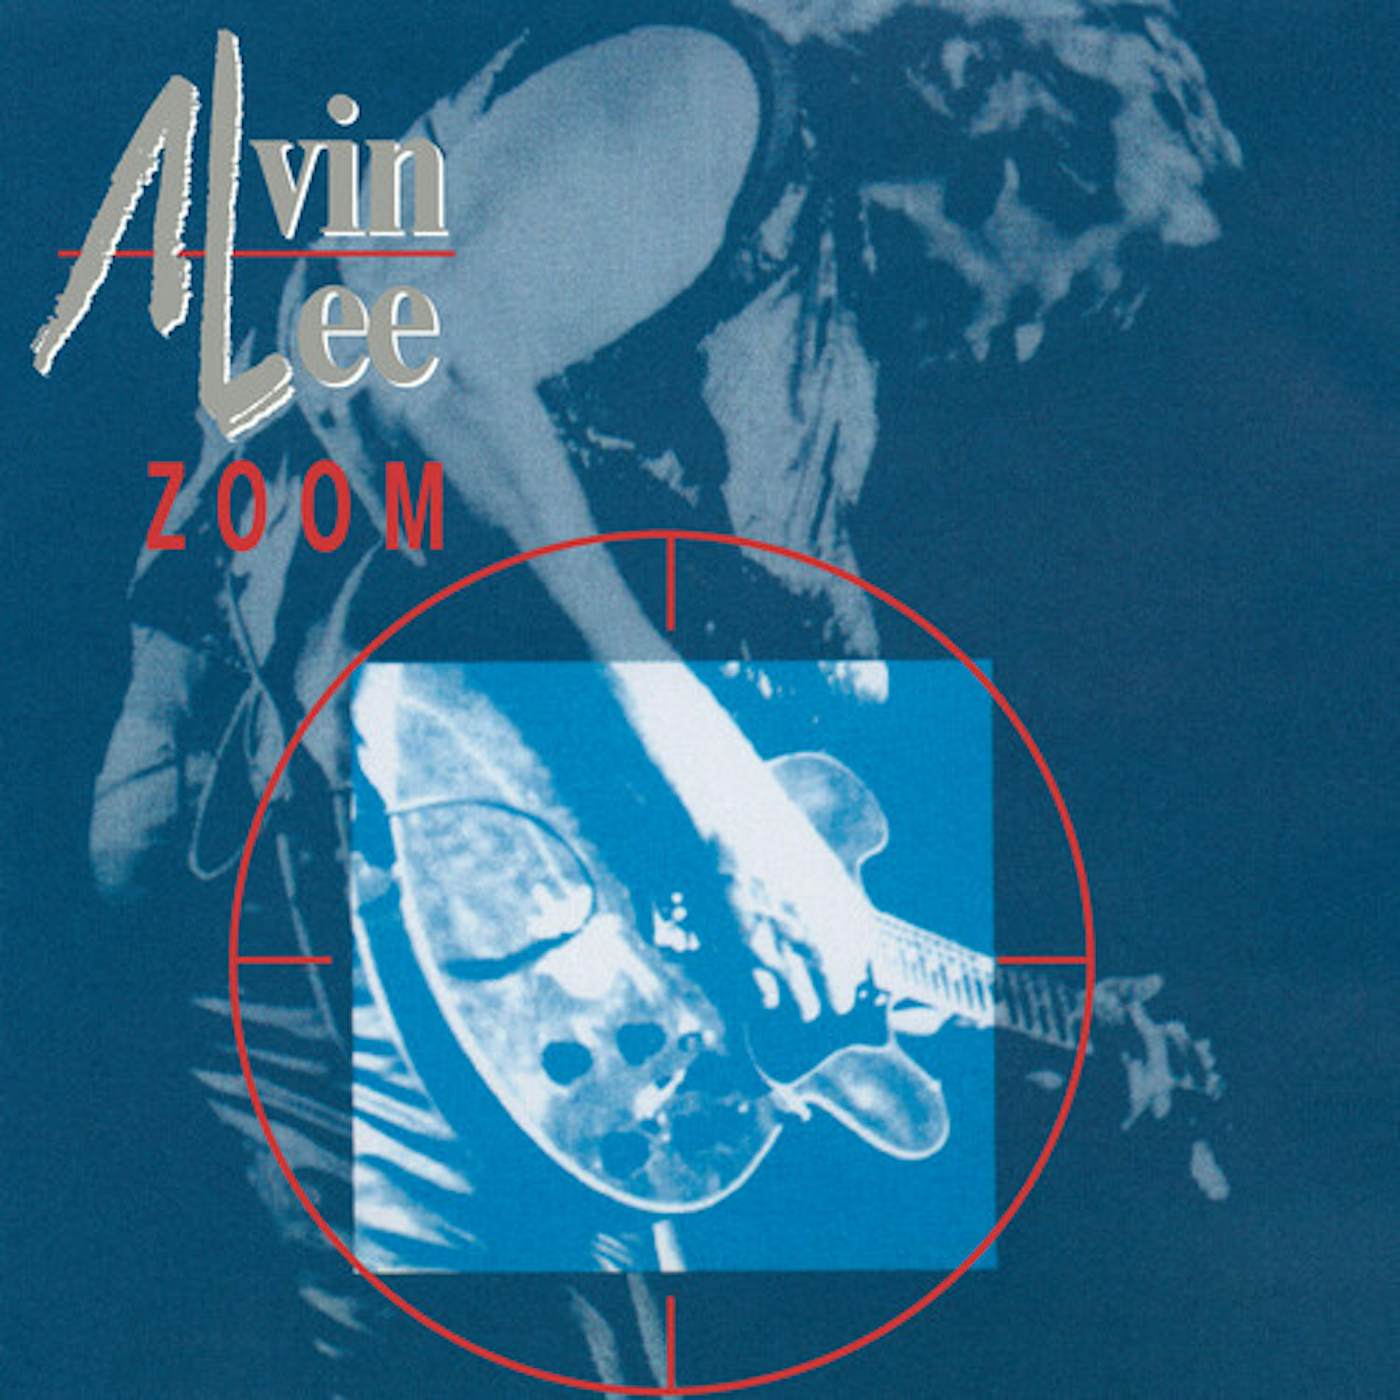 Alvin Lee Zoom Vinyl Record